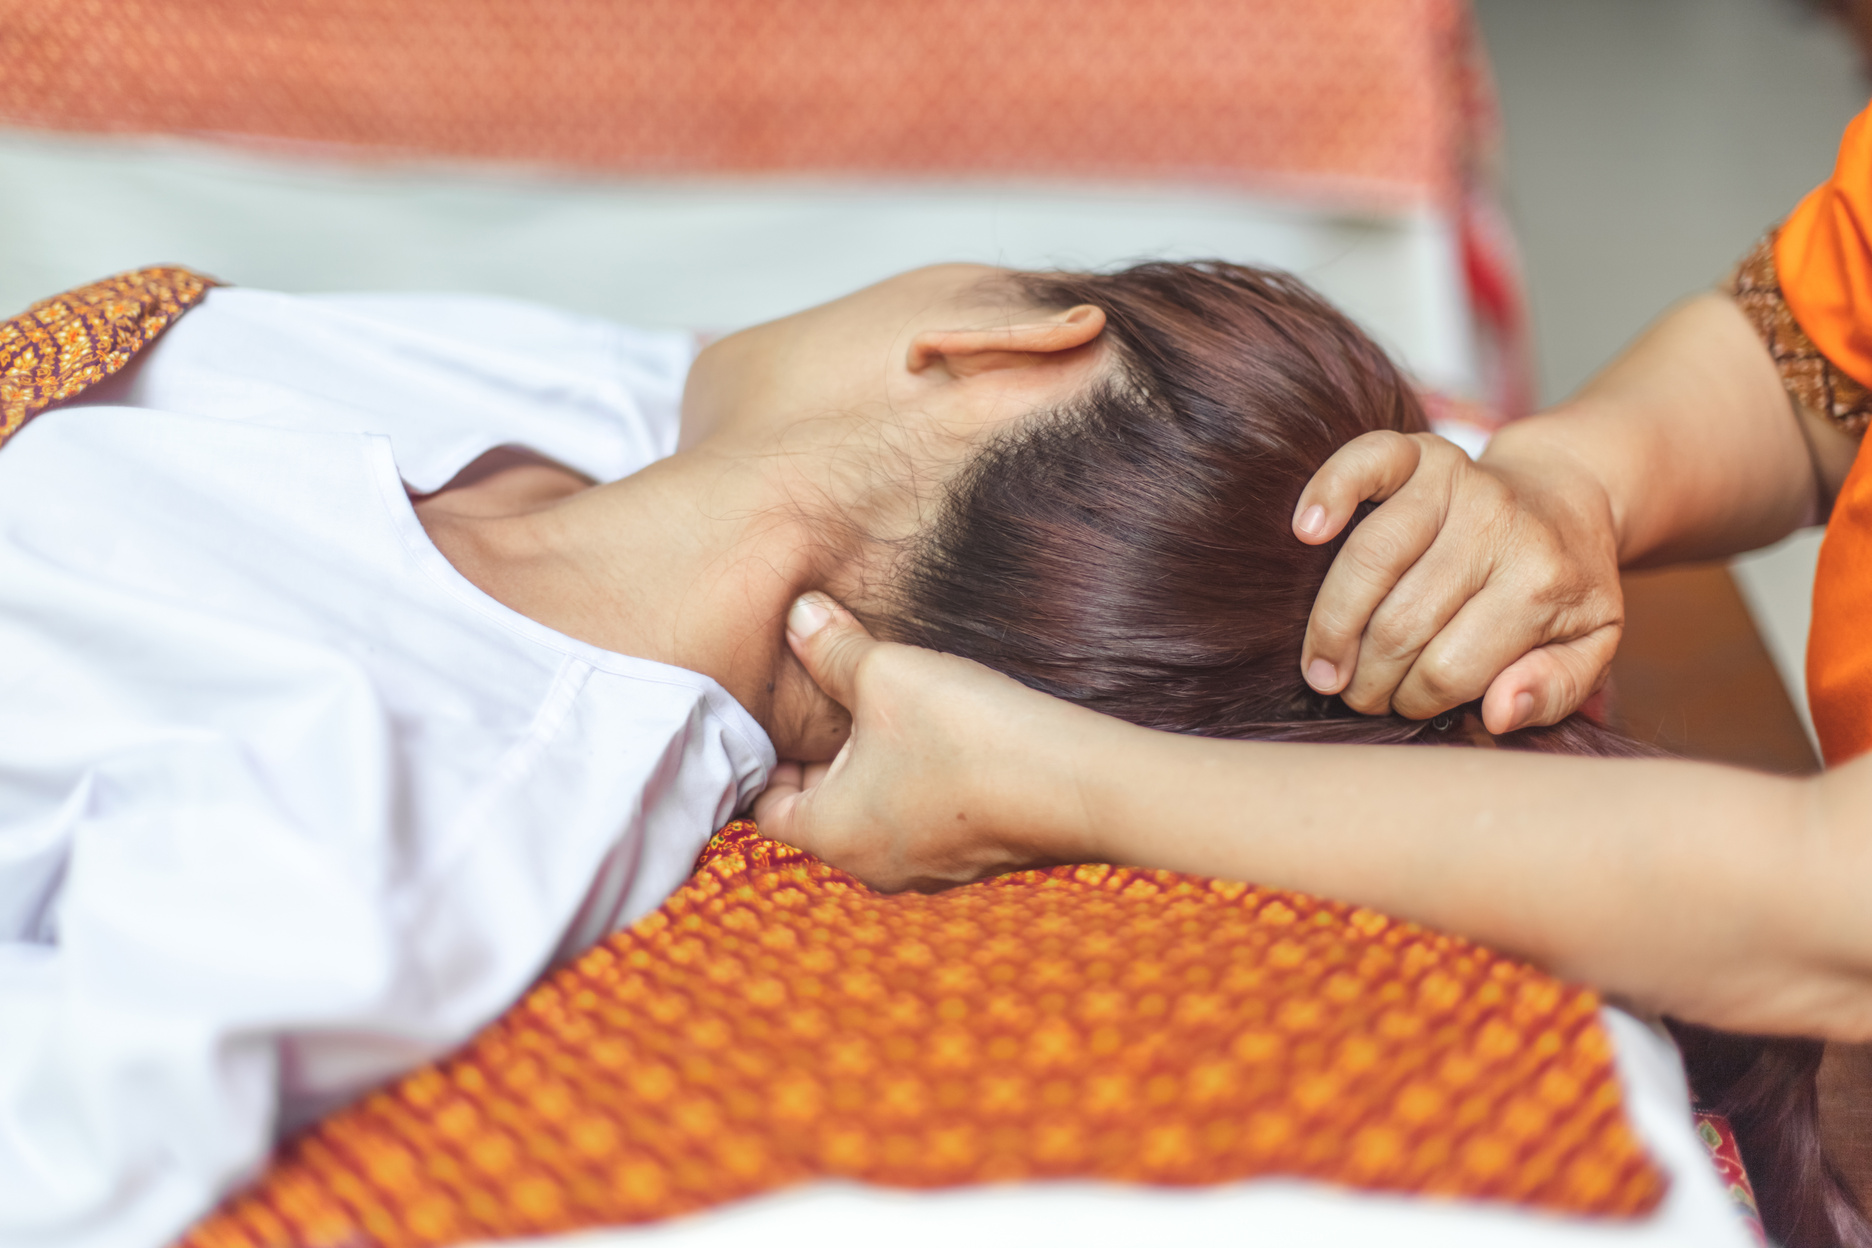 Healing shiatsu massage. Acupressure points to relieve neck tension. reflexology